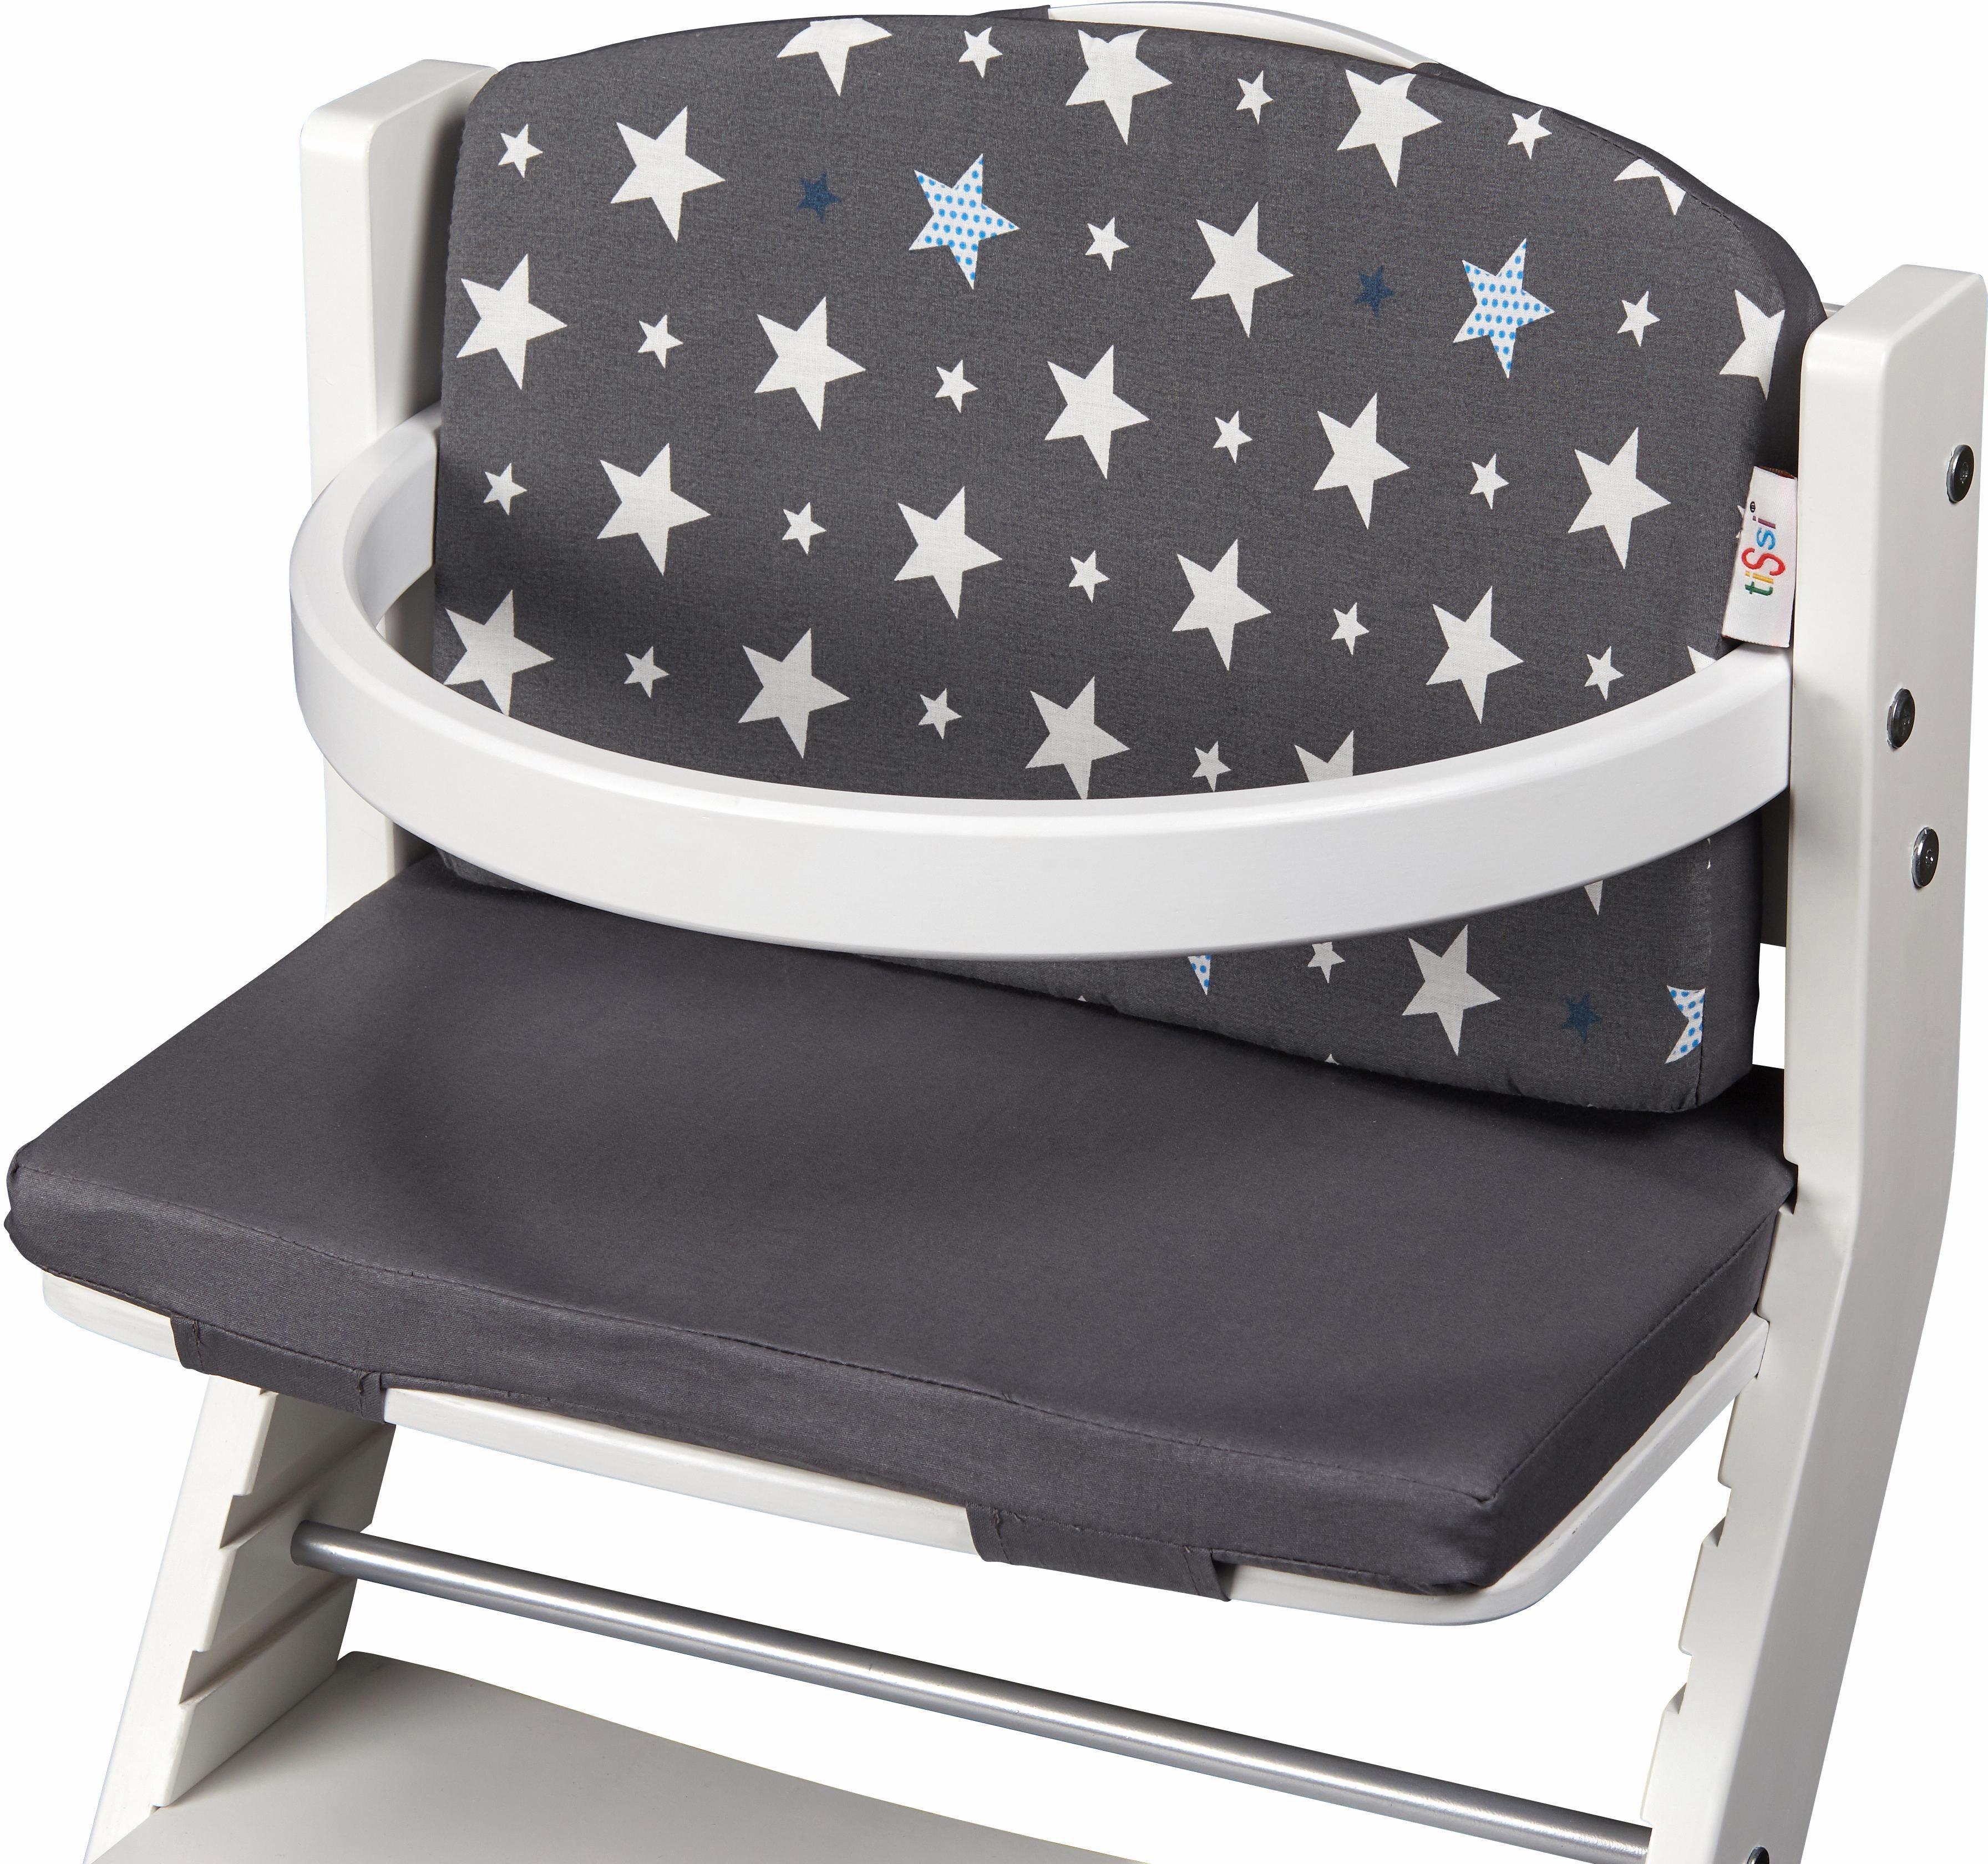 tiSsi® Kinder-Sitzauflage Sterne, grau, für tiSsi® Hochstuhl; Made in Europe